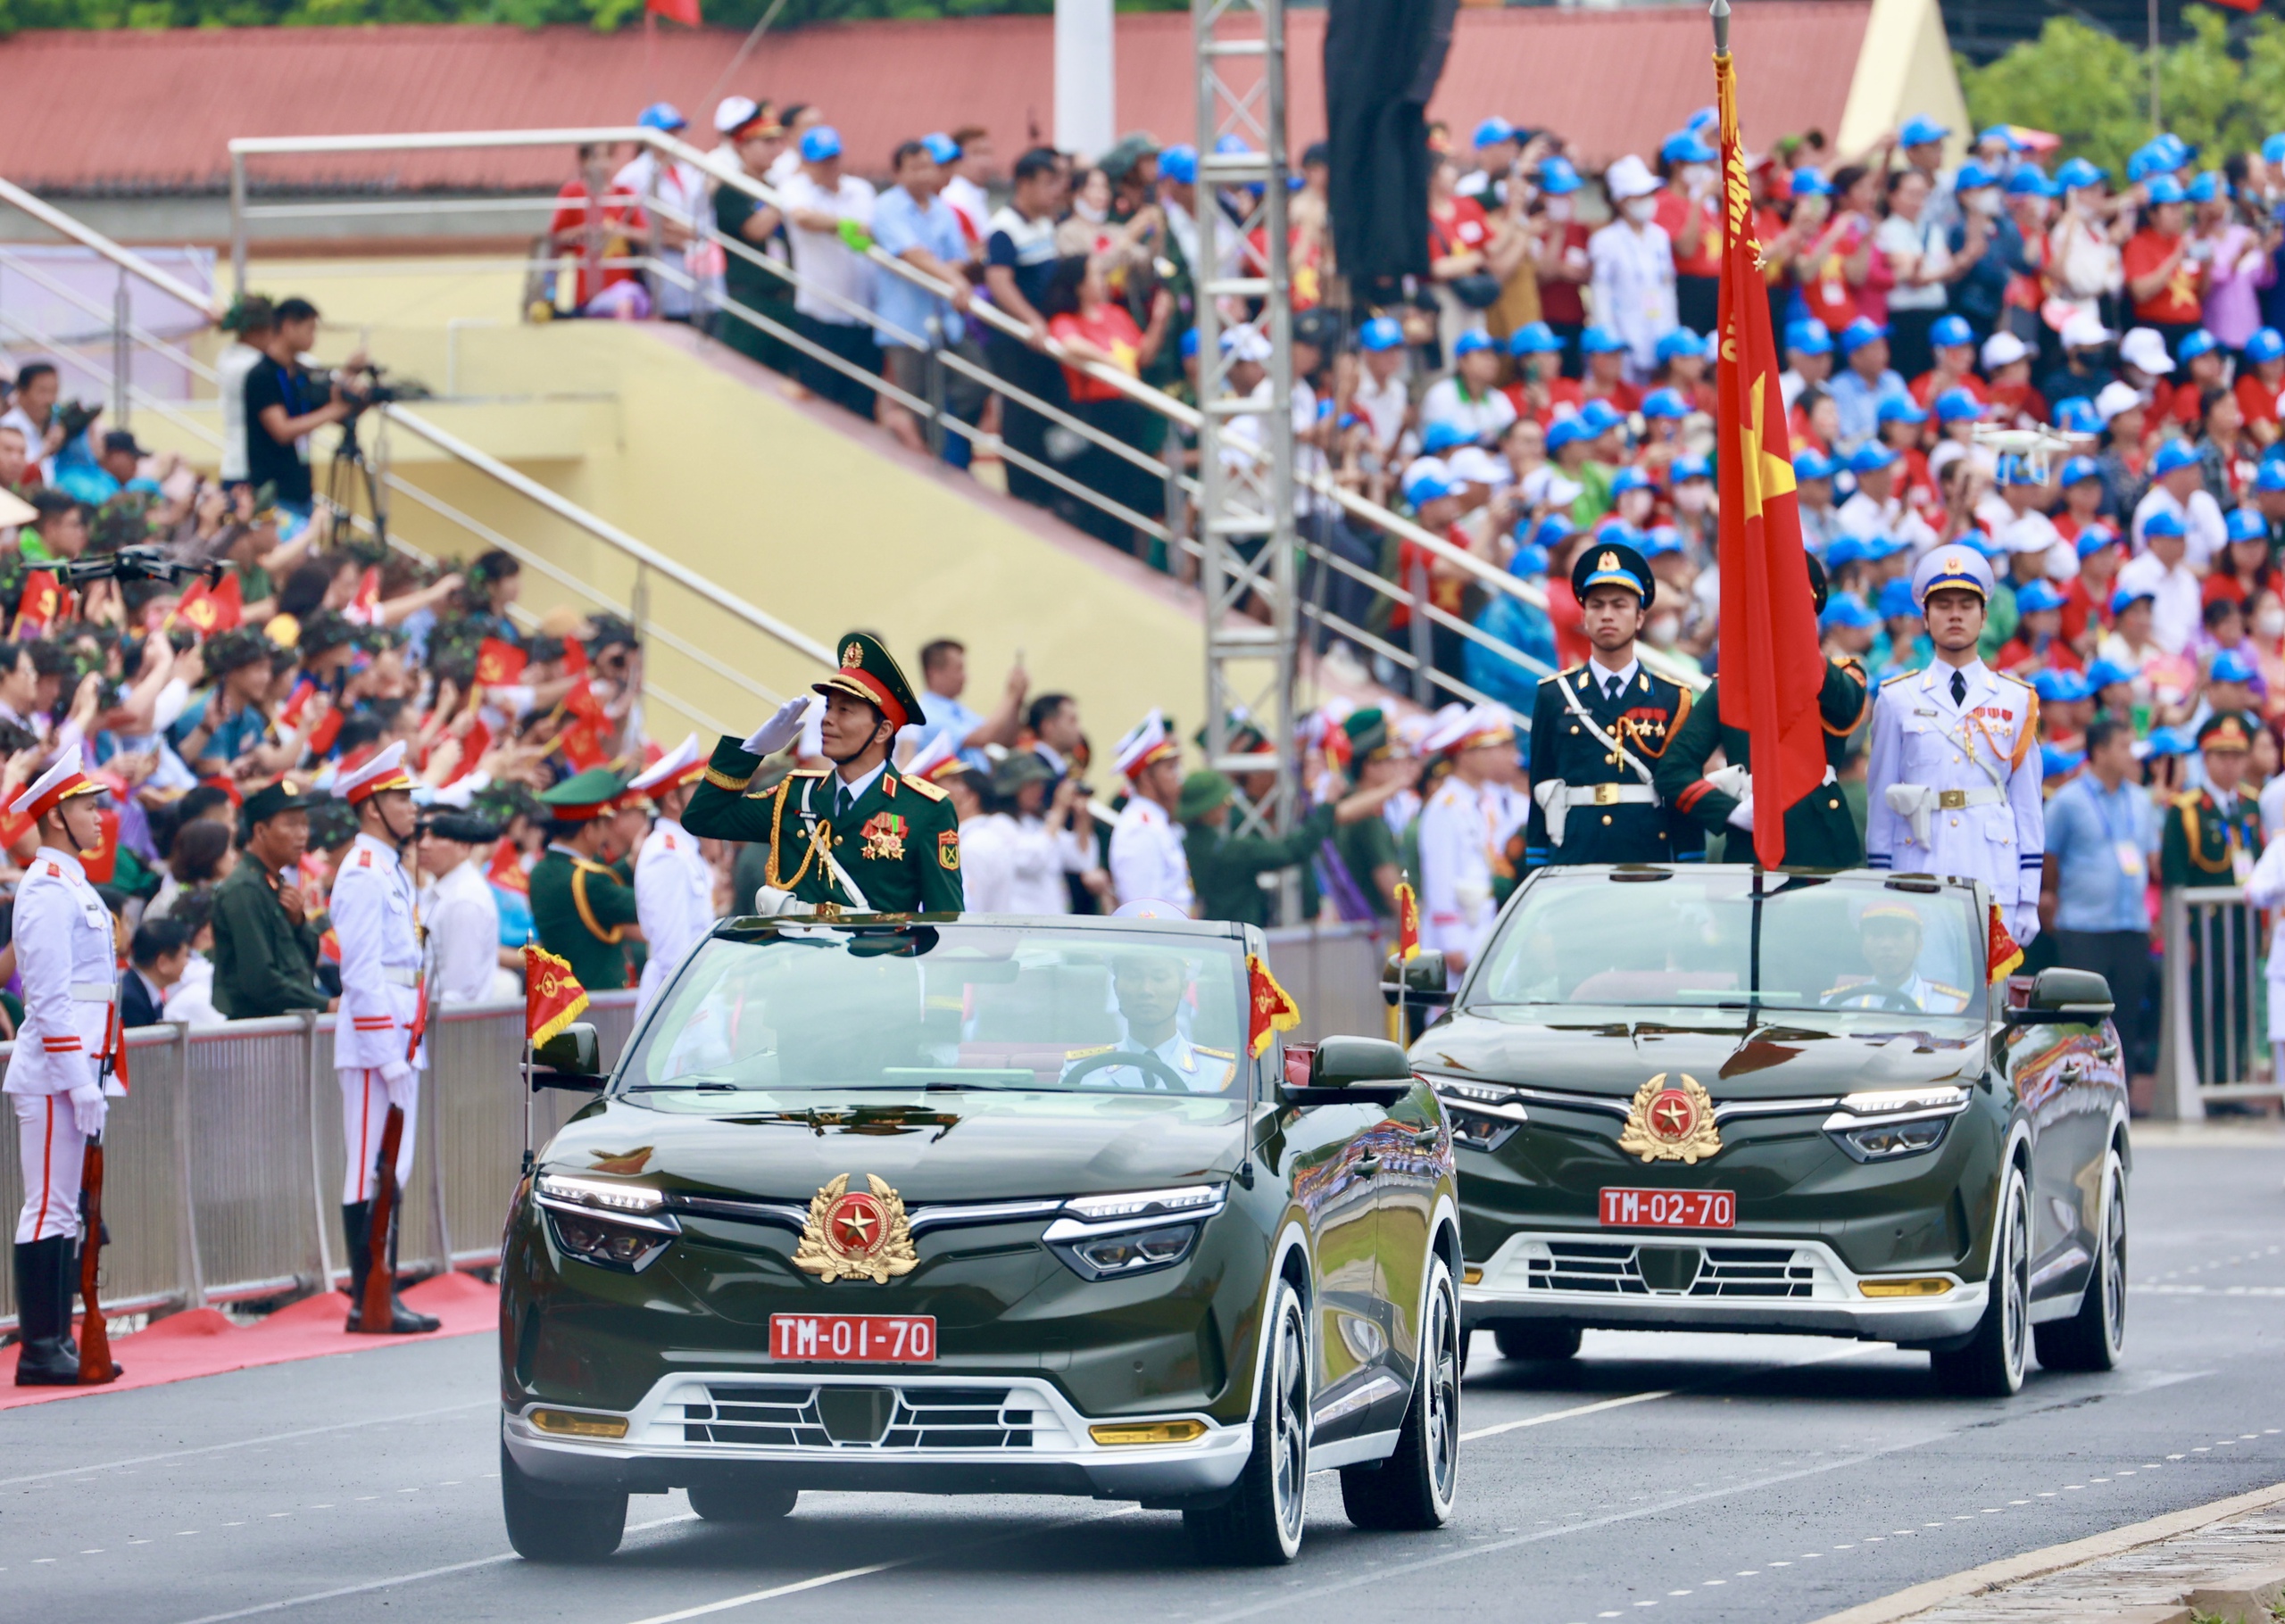 Hai chiếc VF8 đầu tiên là xe chỉ huy, xe tổ quân kỳ toàn quân do trung tướng Nguyễn Trọng Bình, Phó tổng Tham mưu trưởng QĐND Việt Nam chỉ huy, dẫn đầu